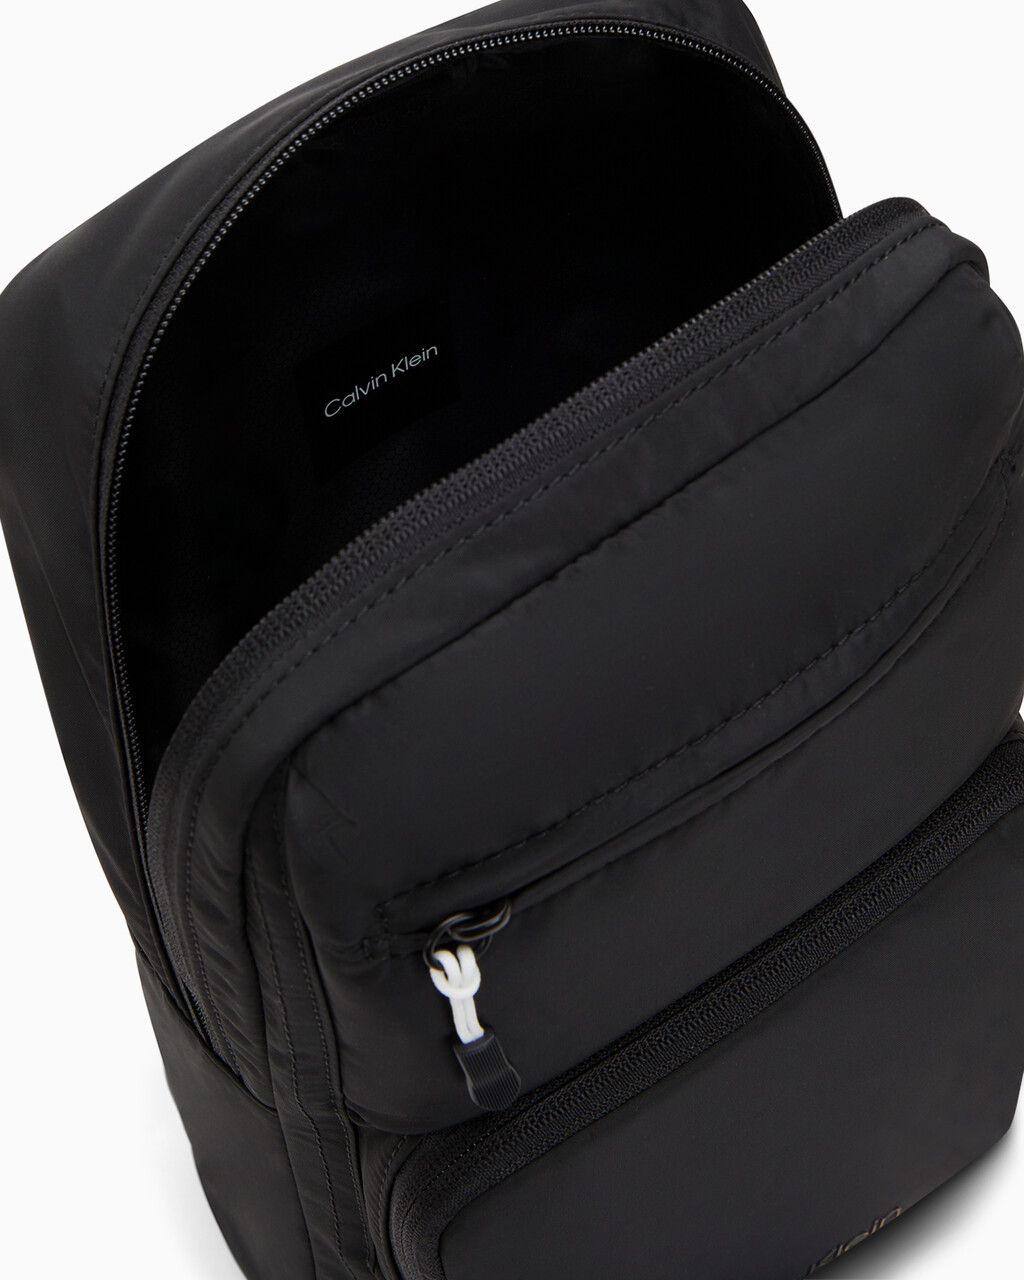 Modern Sport Sling Bag, BLACK BEAUTY, hi-res